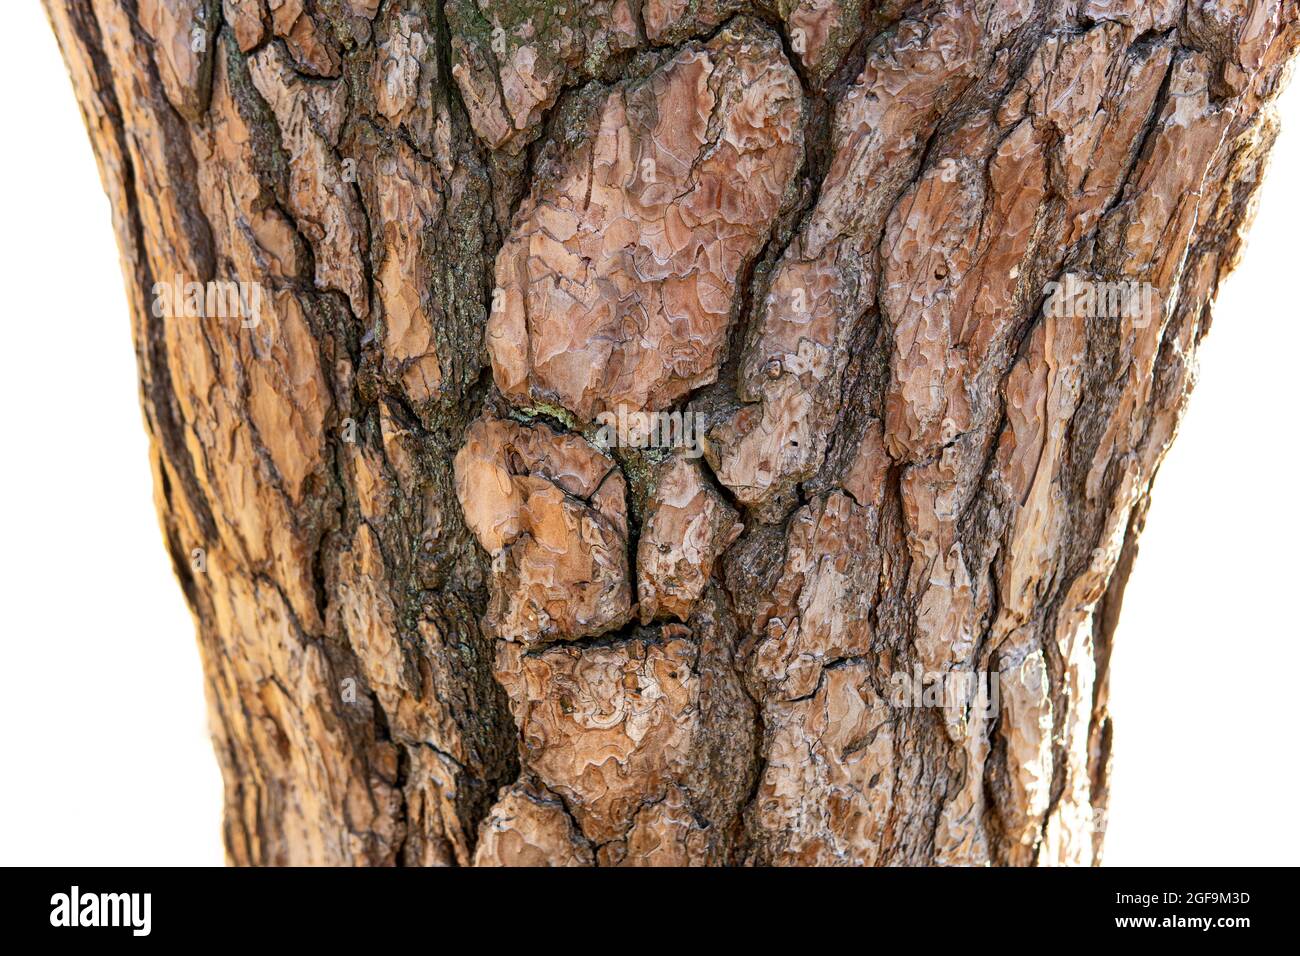 Gros plan d'un motif d'écorce ressemblant à un visage sur un tronc d'arbre isolé sur fond blanc Banque D'Images